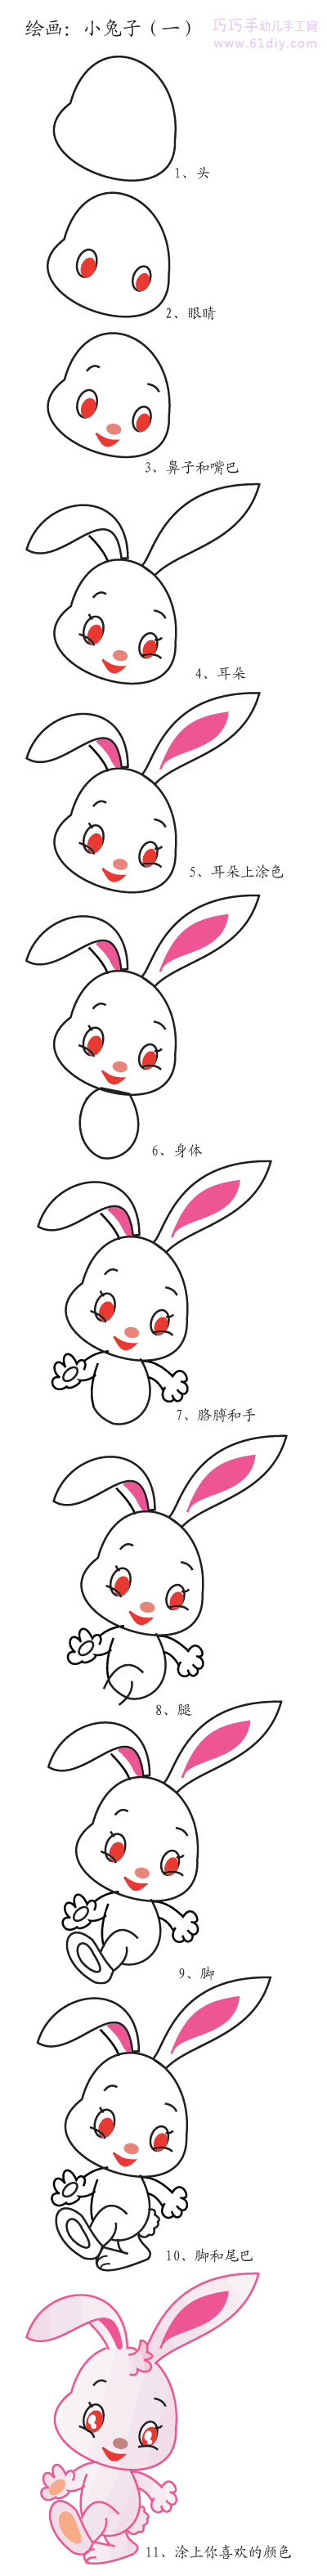 幼儿学画——小兔子的画法步骤图解